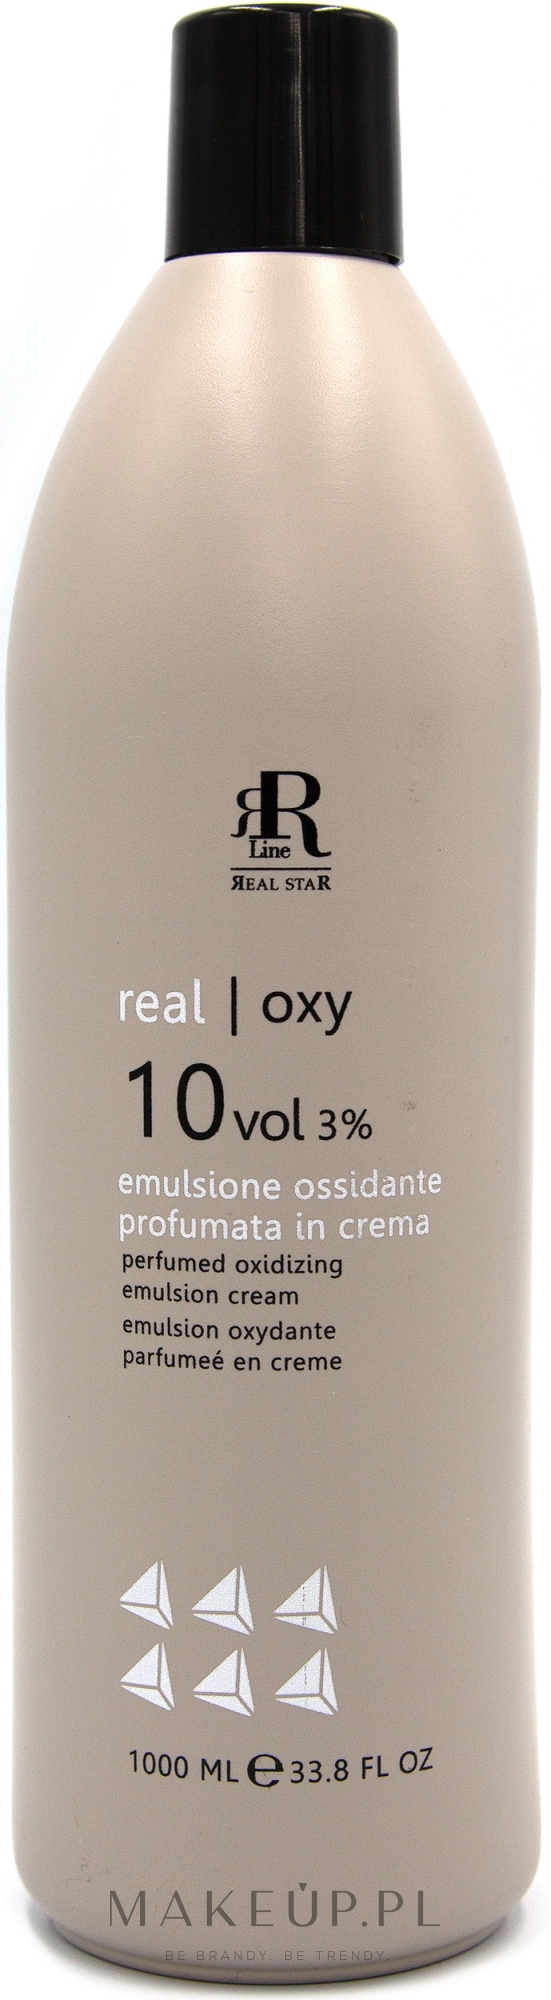 Perfumowana emulsja utleniająca 3% - RR Line Parfymed Oxidizing Emulsion Cream — Zdjęcie 1000 ml